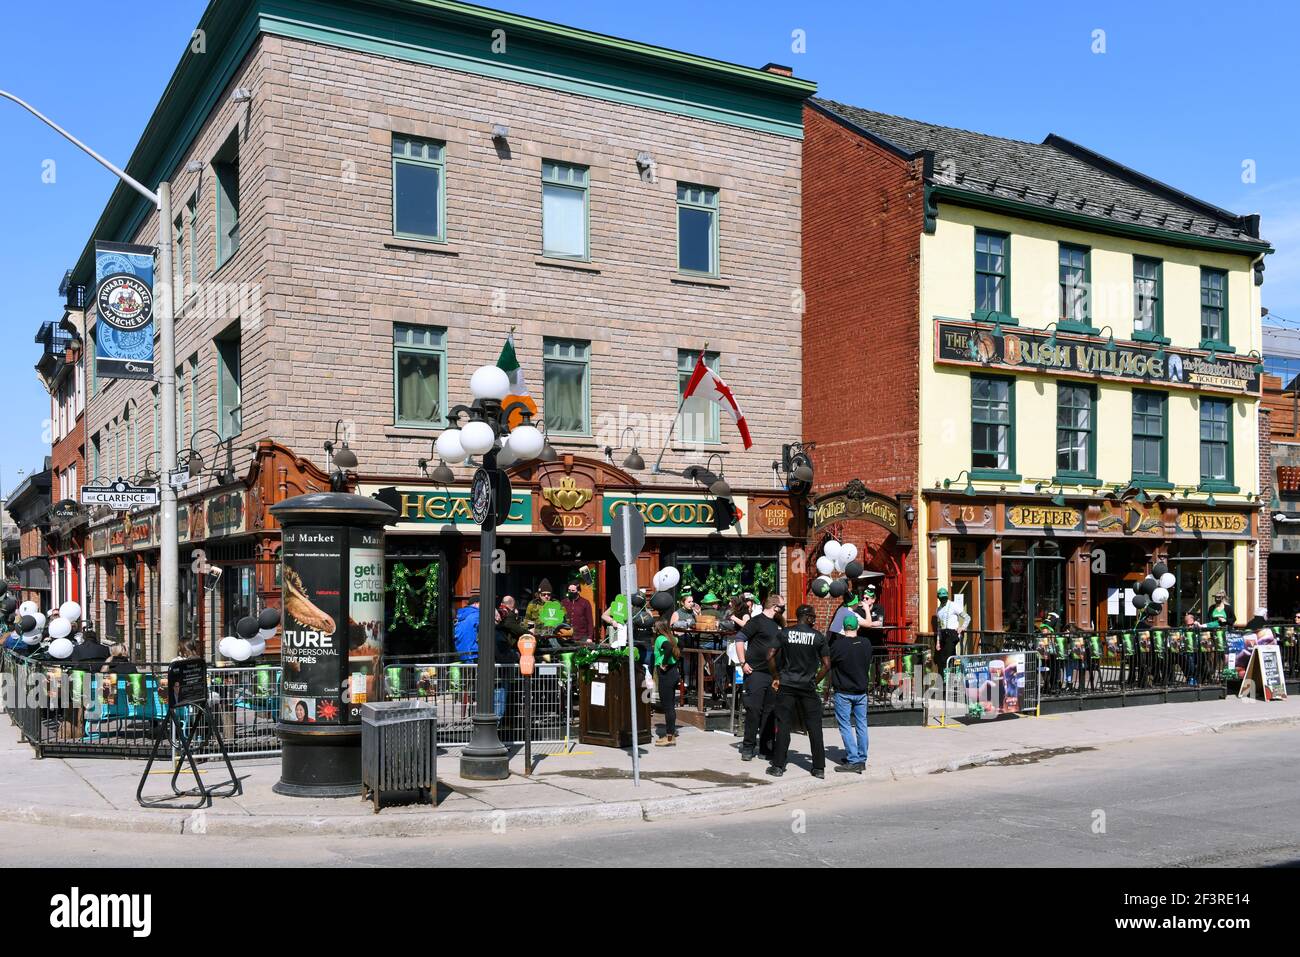 Ottawa, Kanada – 17. März 2021: Aufgrund der Covid-19-Einschränkungen ist der St. Patrick’s Day im beliebten Irish Pub The Heart and Crown viel kleiner als sonst. Das warme Wetter machte es möglich, auf der Terrasse zu sitzen. Stockfoto